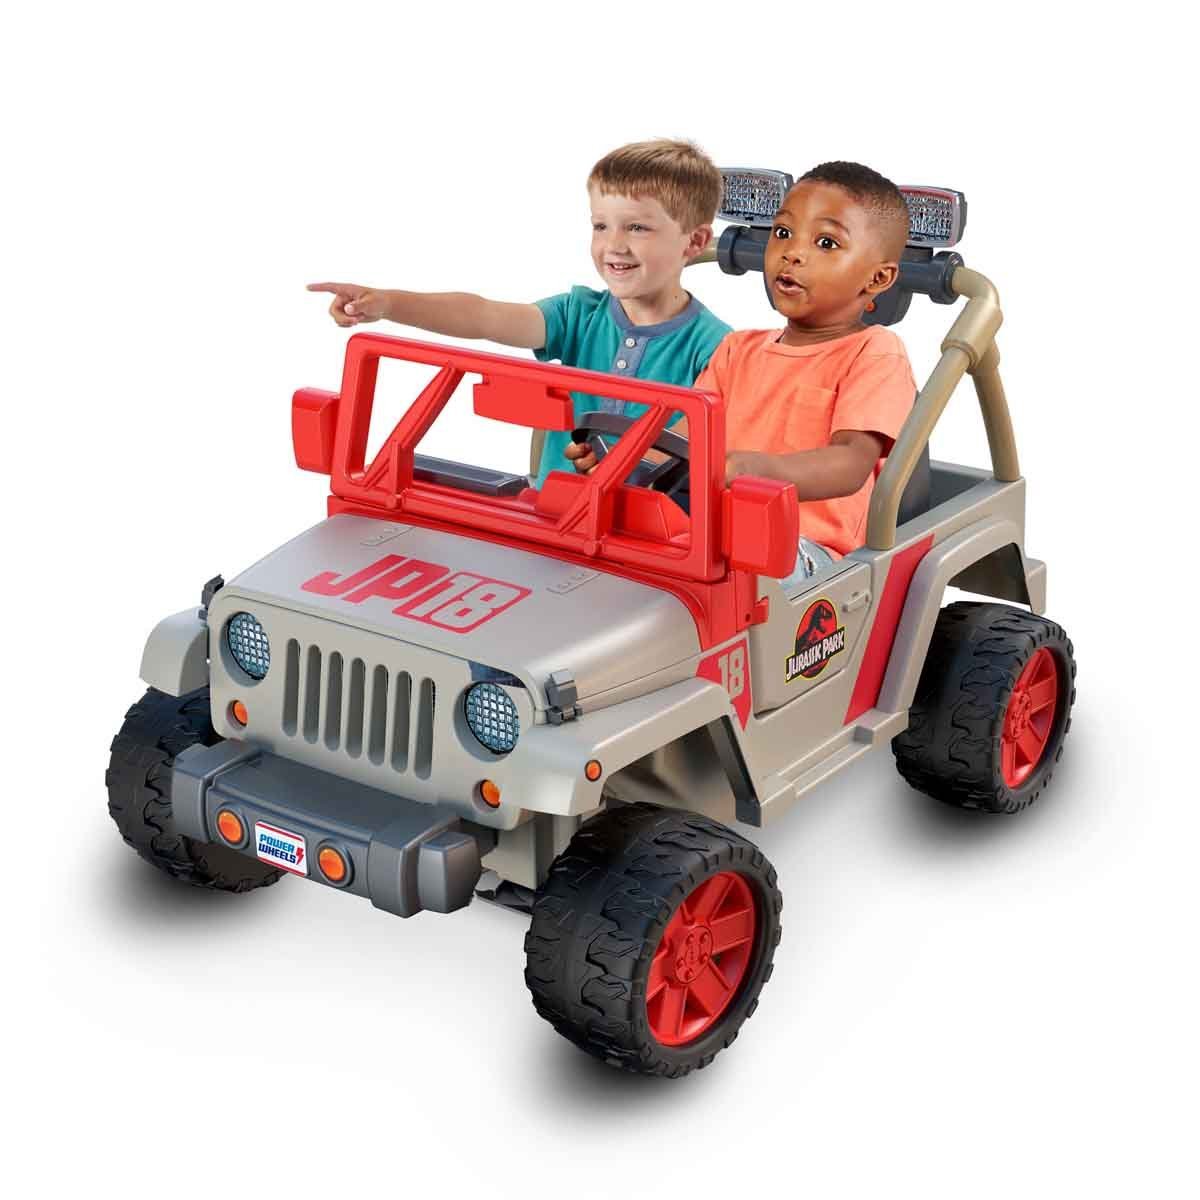 Montable Jurassic Park Jeep Wrangler Mattel